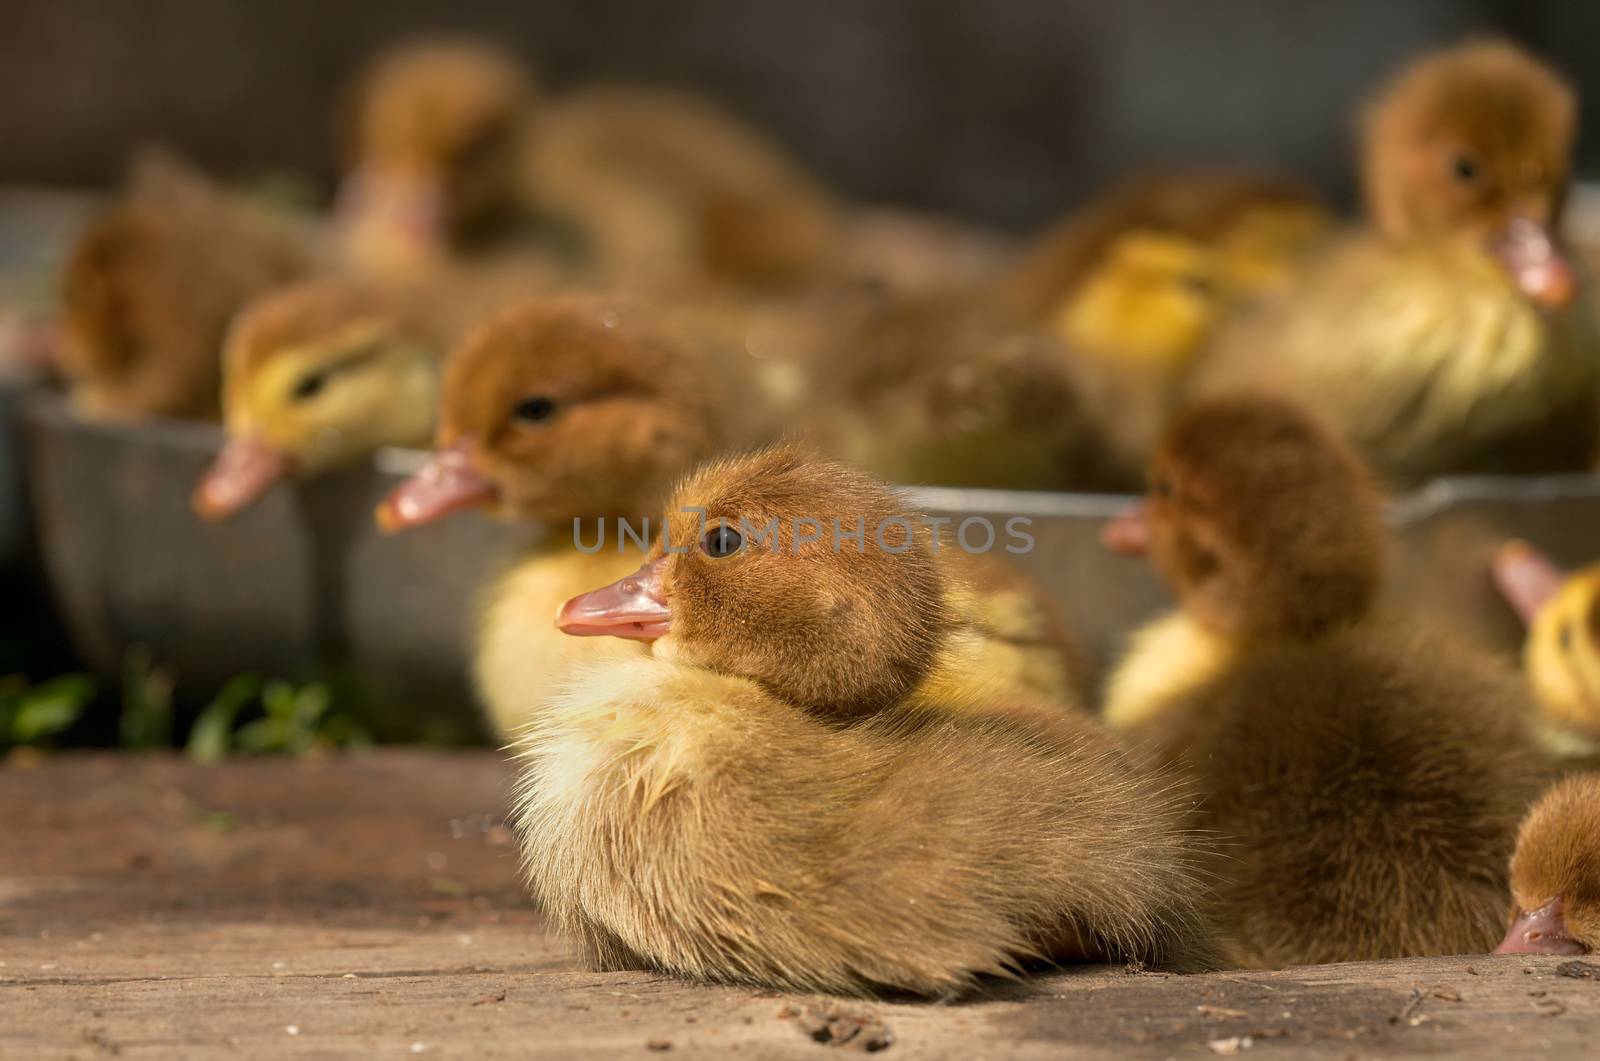 Musk duck ducklings by Goruppa